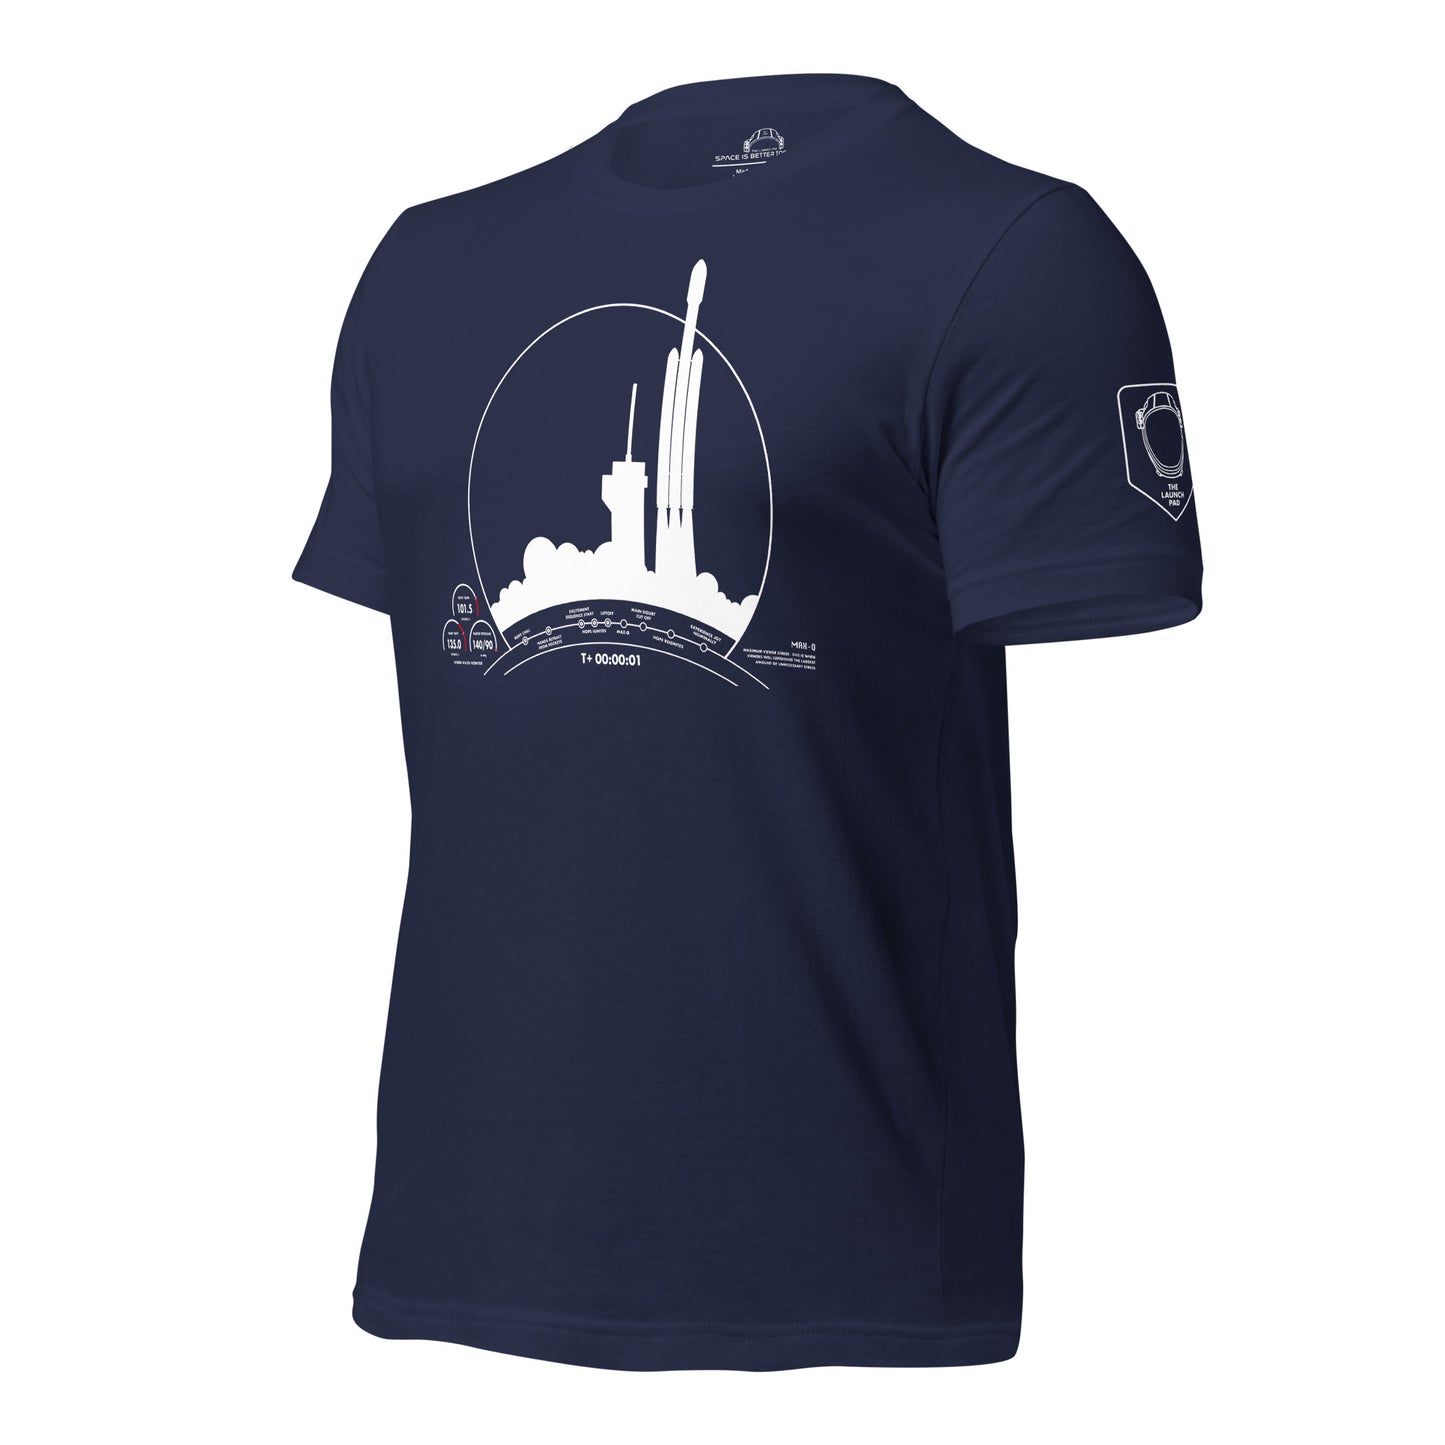 Falcon Heavy Launch Experience Tee